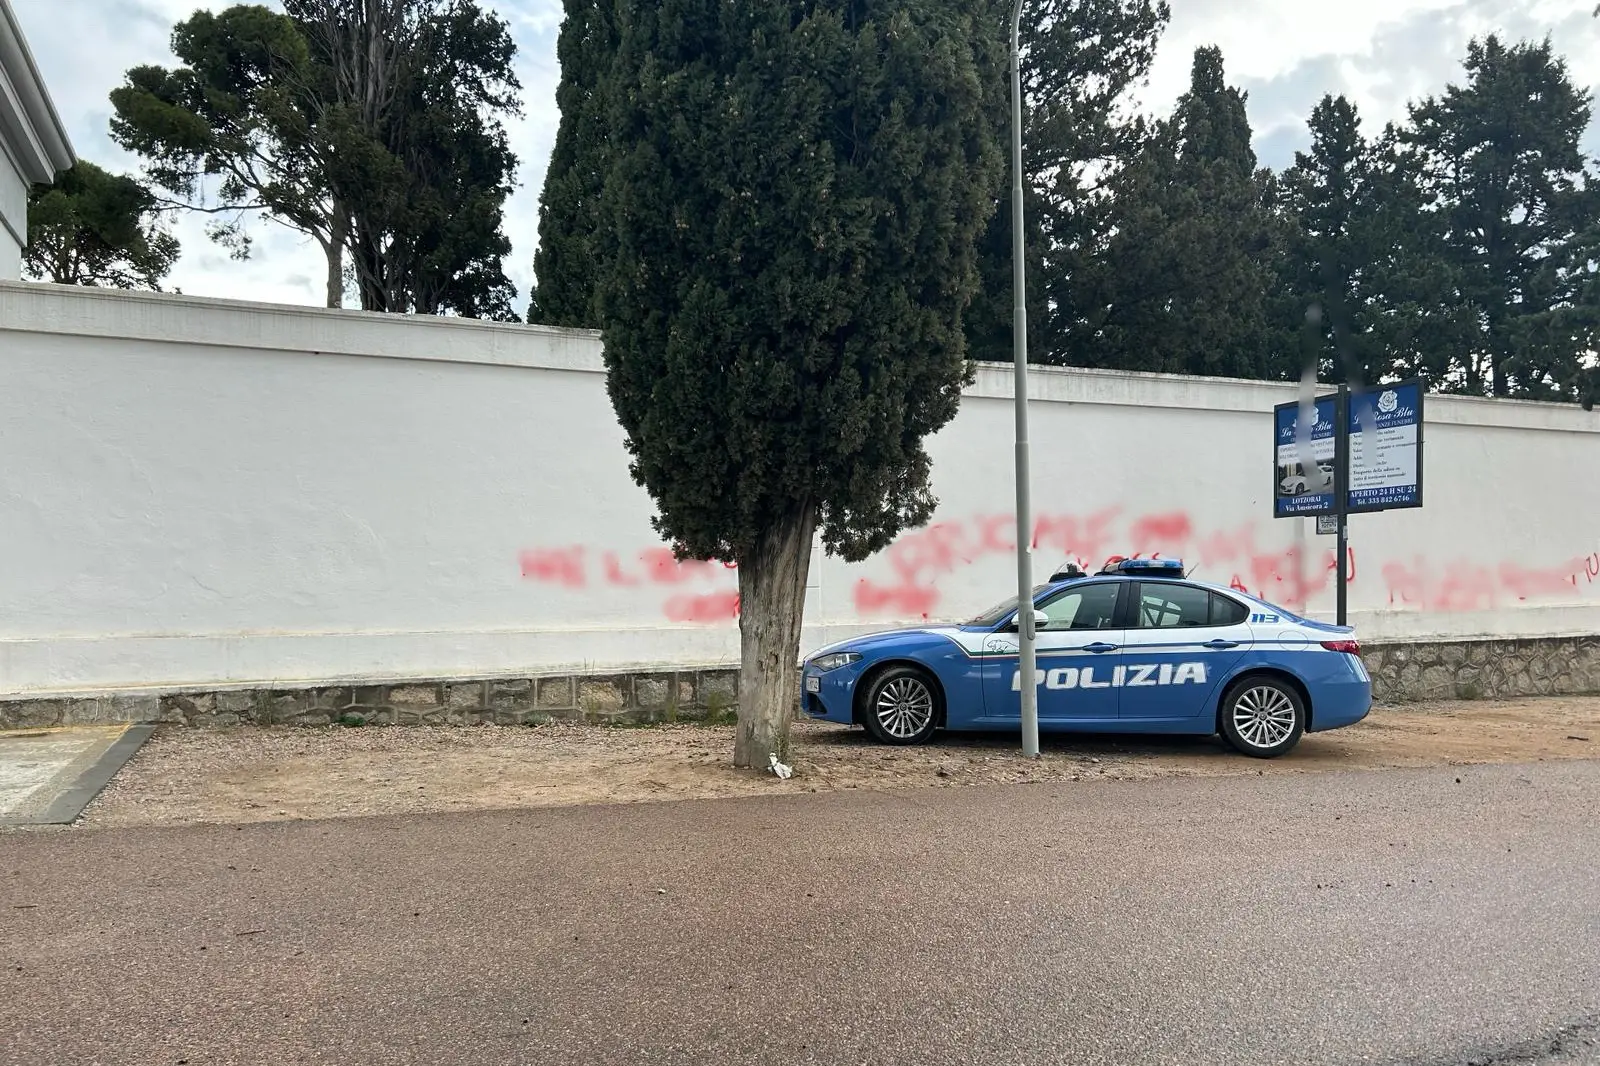 La Volante della polizia davanti al muro imbrattato (L'Unione Sarda)